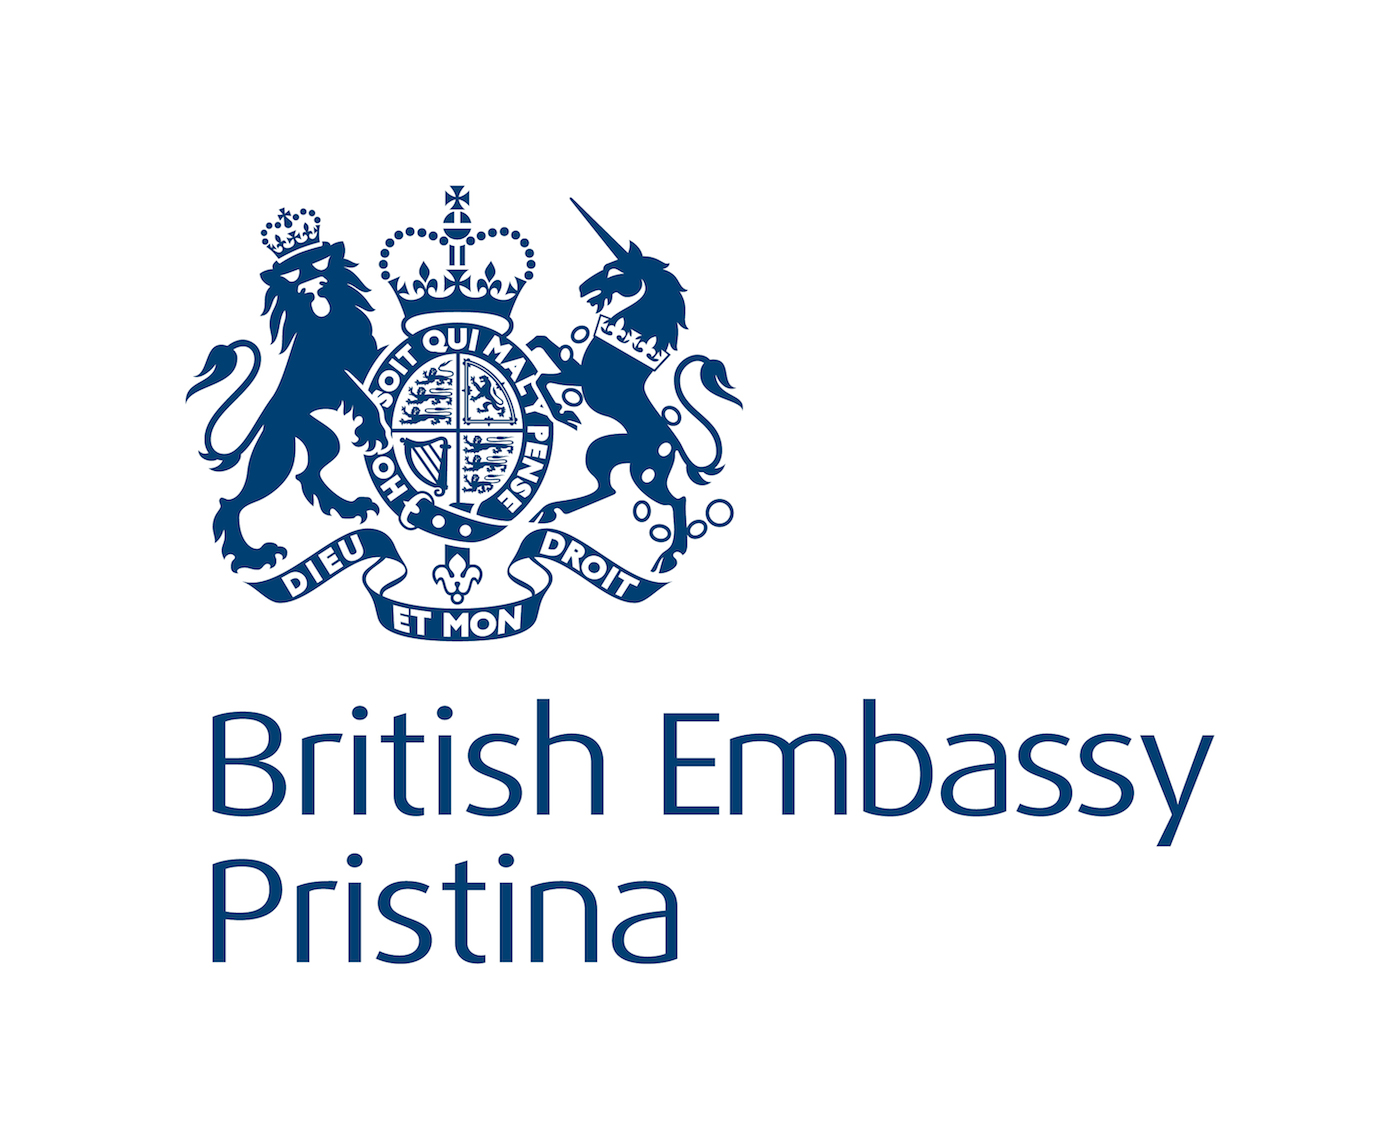 British Logo - British Embassy Logos - Fonts In Use